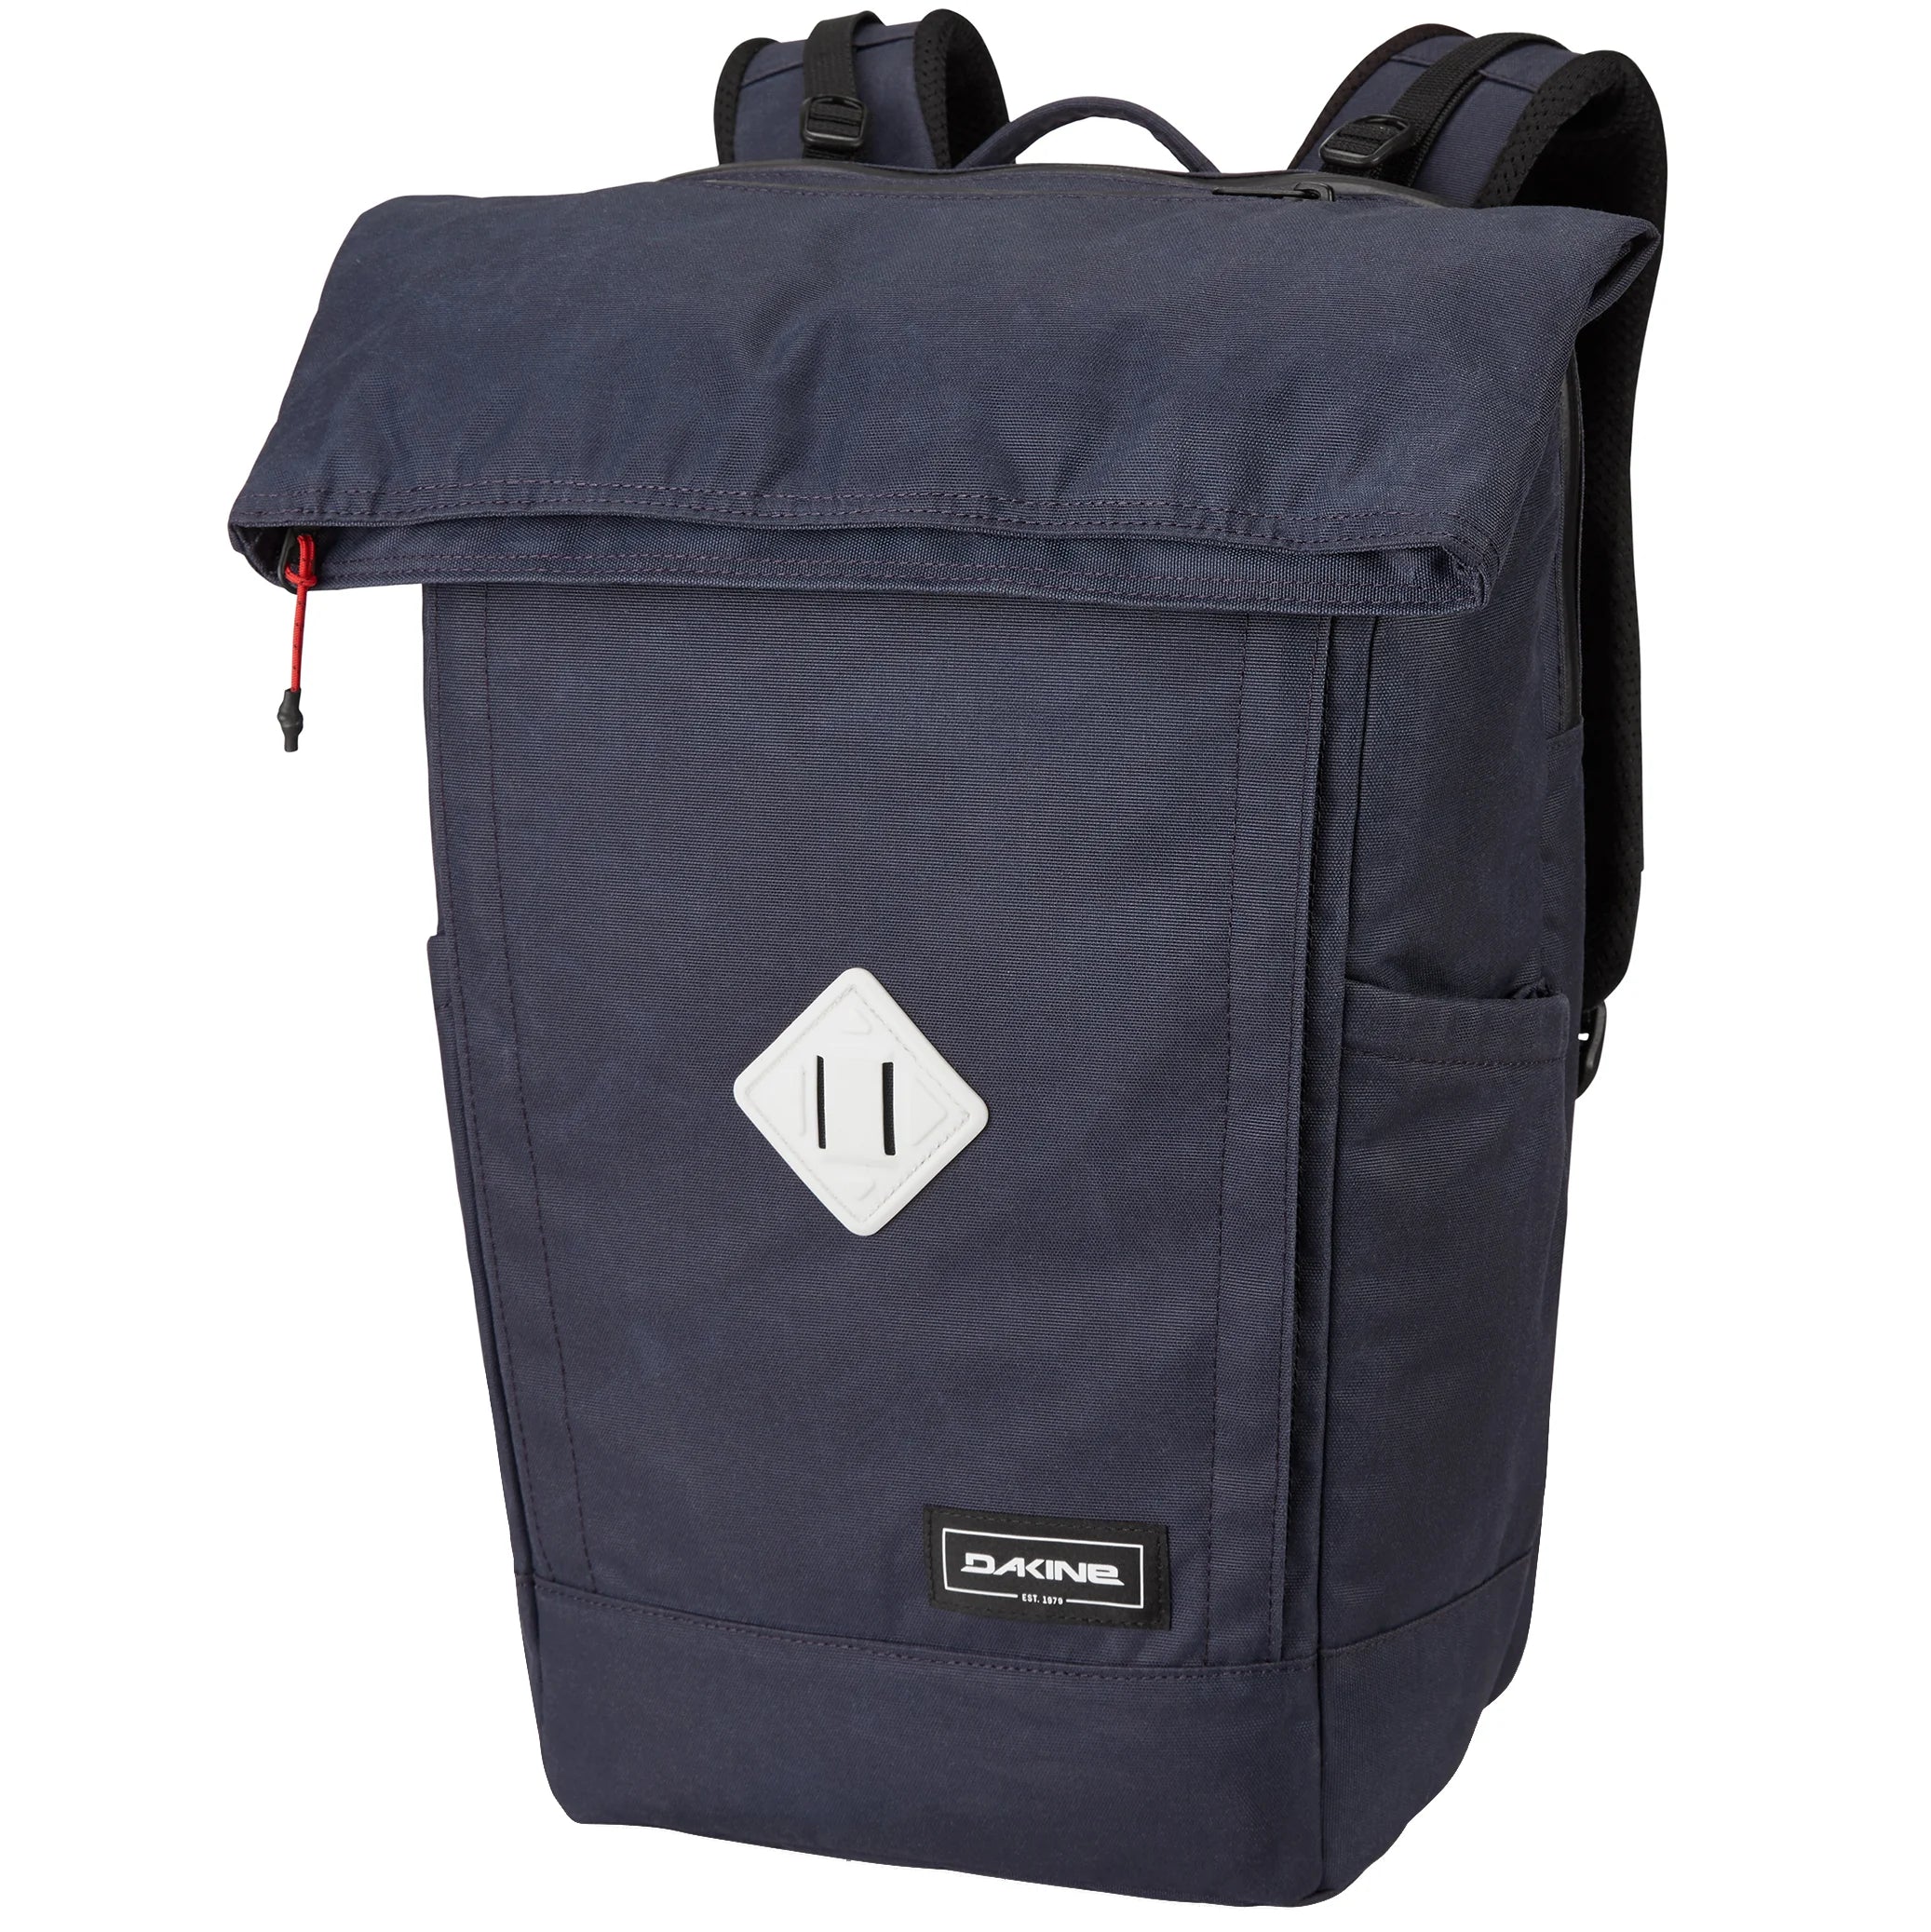 Dakine Packs & Bags Infinity Pack 21L Rucksack 46 cm - geyser grey